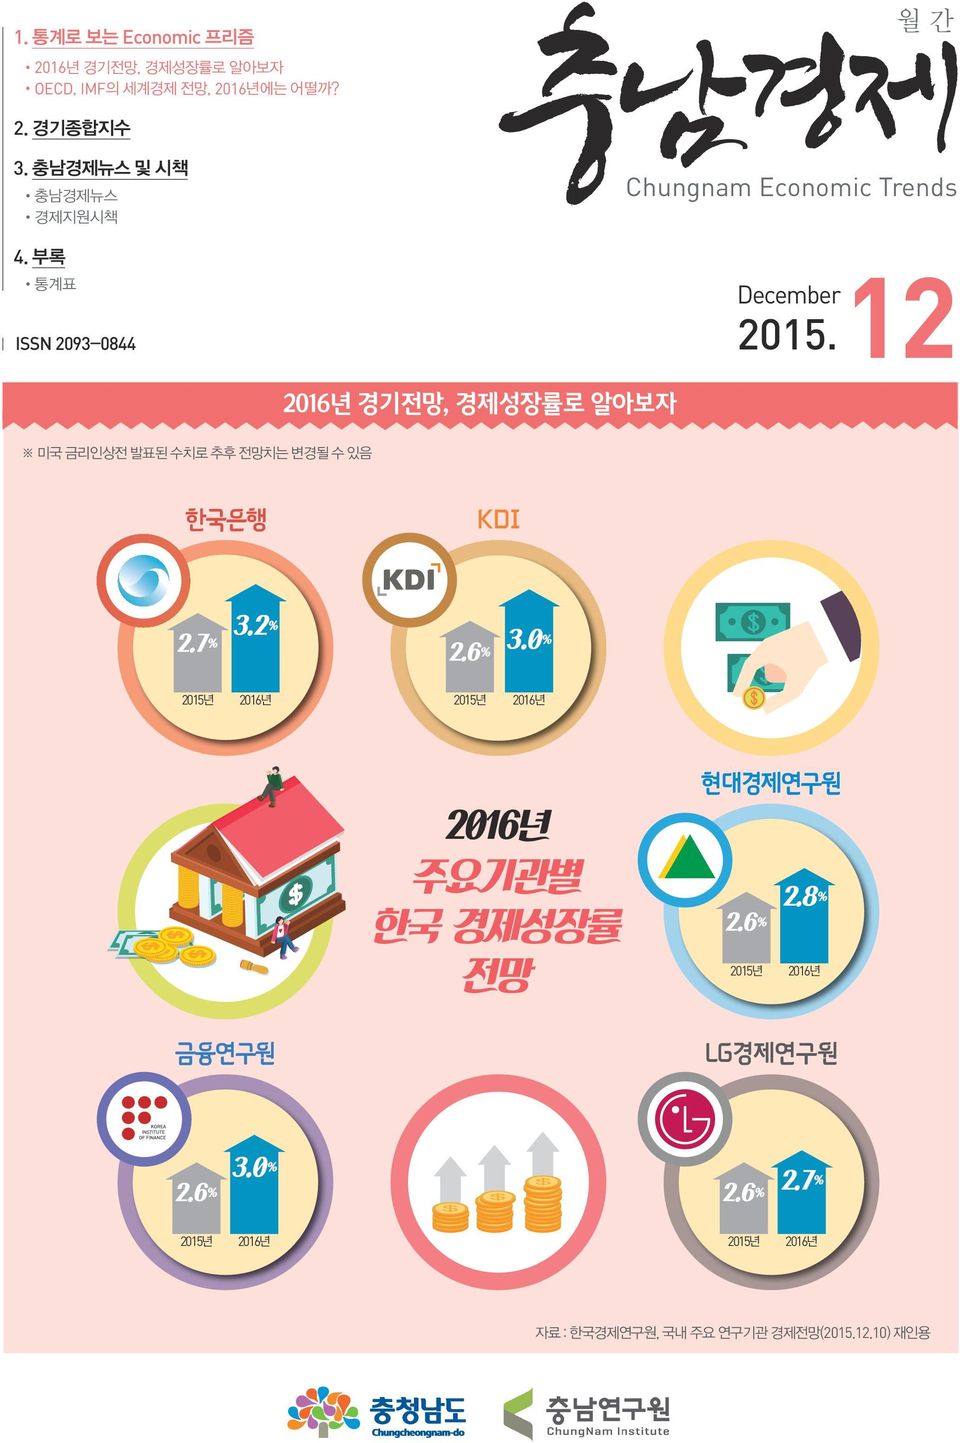 6 % 3.0 % 2015 2016 2015 2016 2016년 주요기관별 한국 경제성장률 전망 현대경제연구원 2.8 % 2.